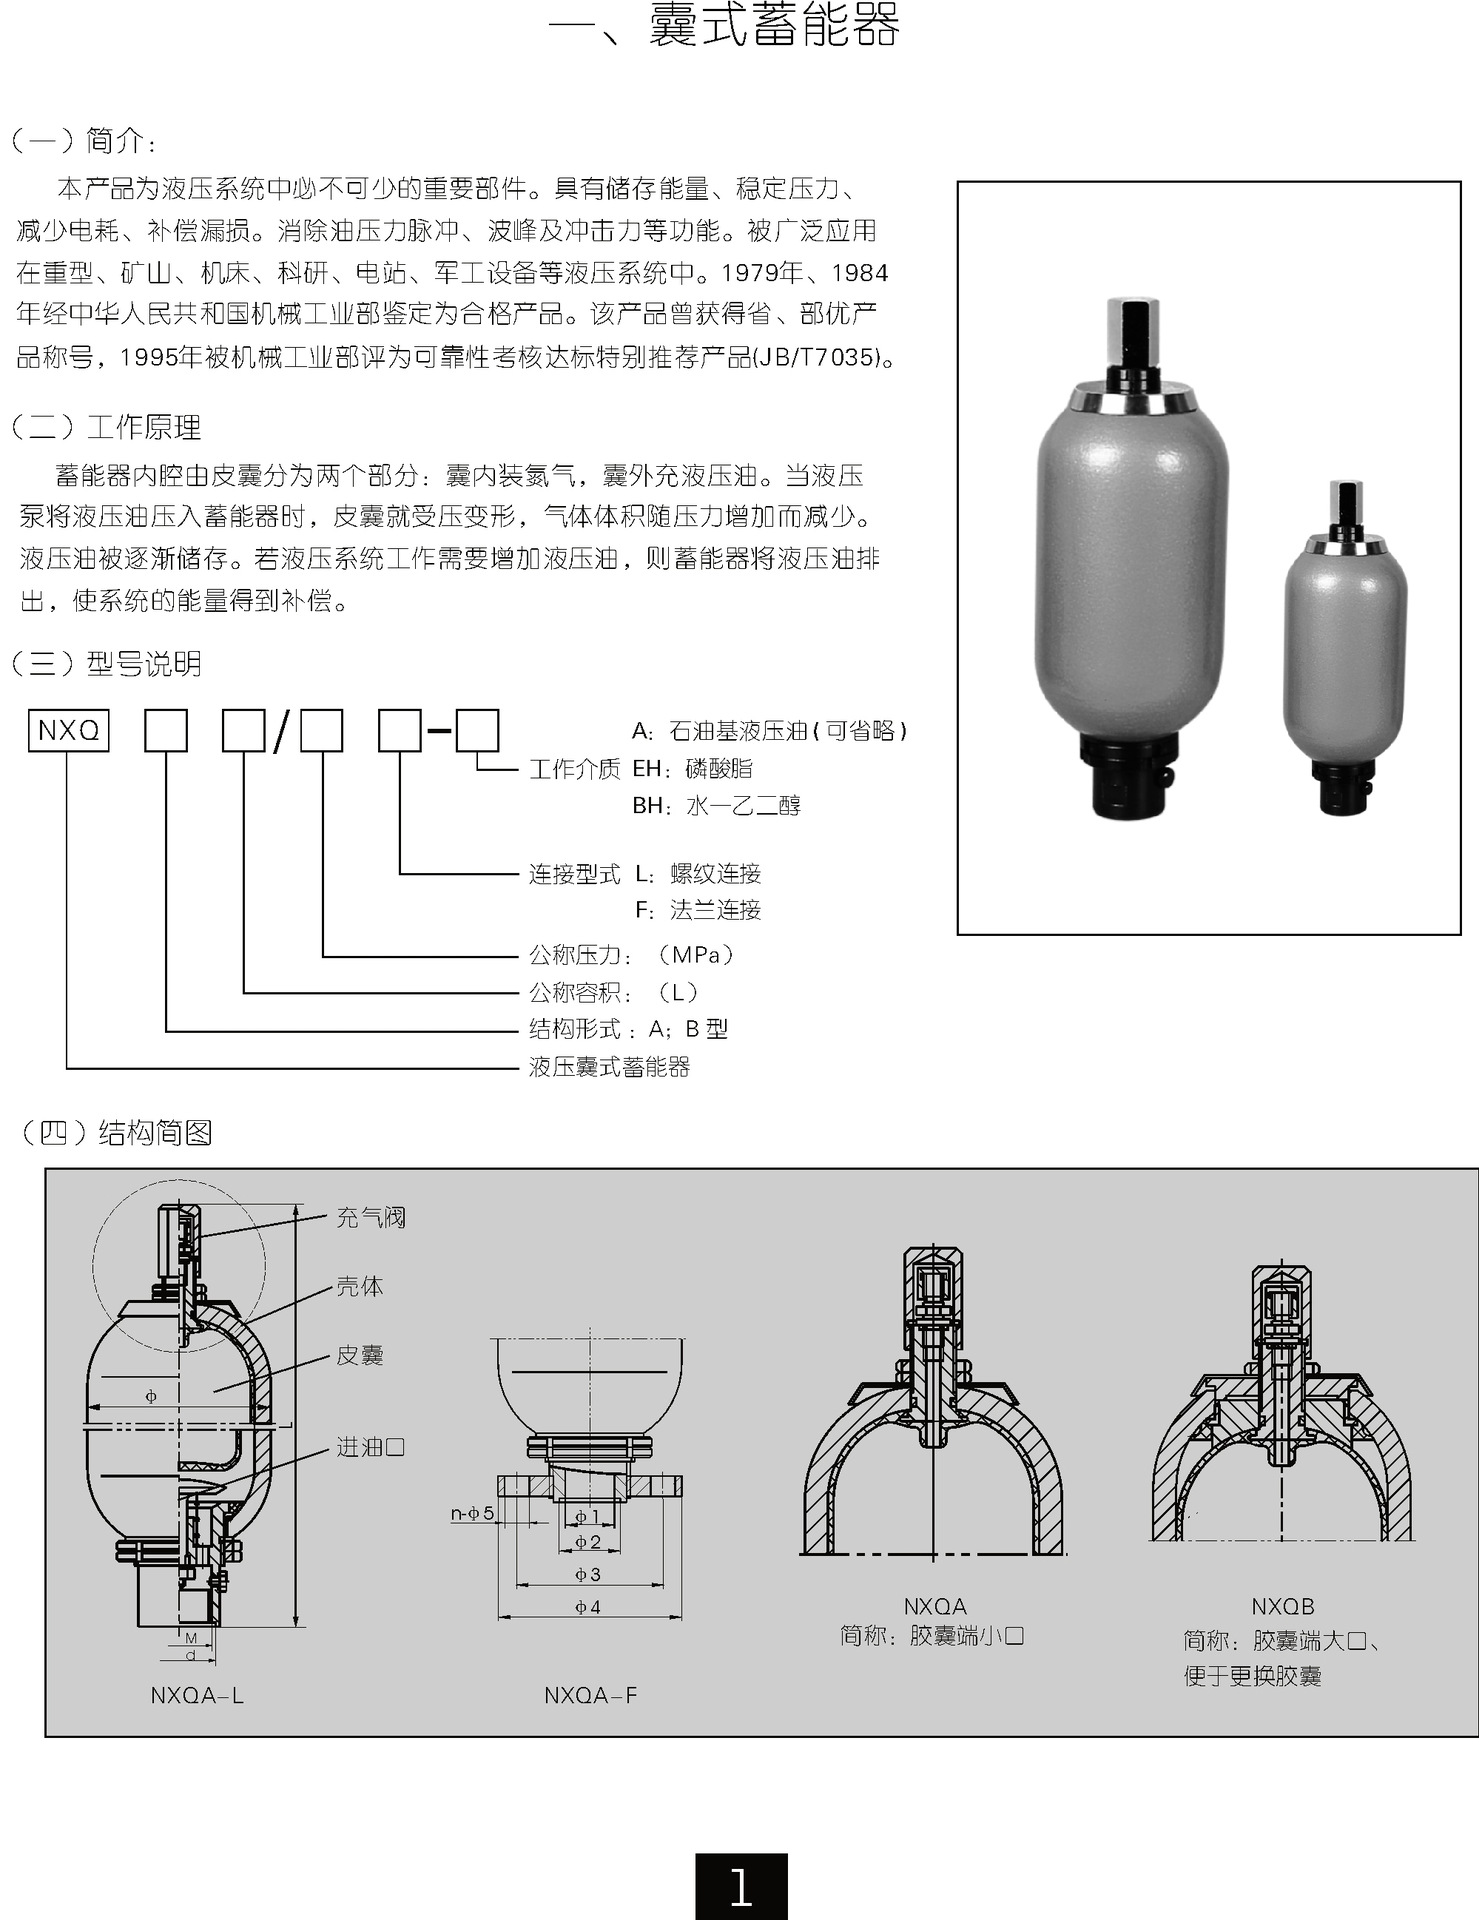 特价直销nxq蓄能器 囊式蓄能器 不锈钢蓄能器 液压蓄能器 天津